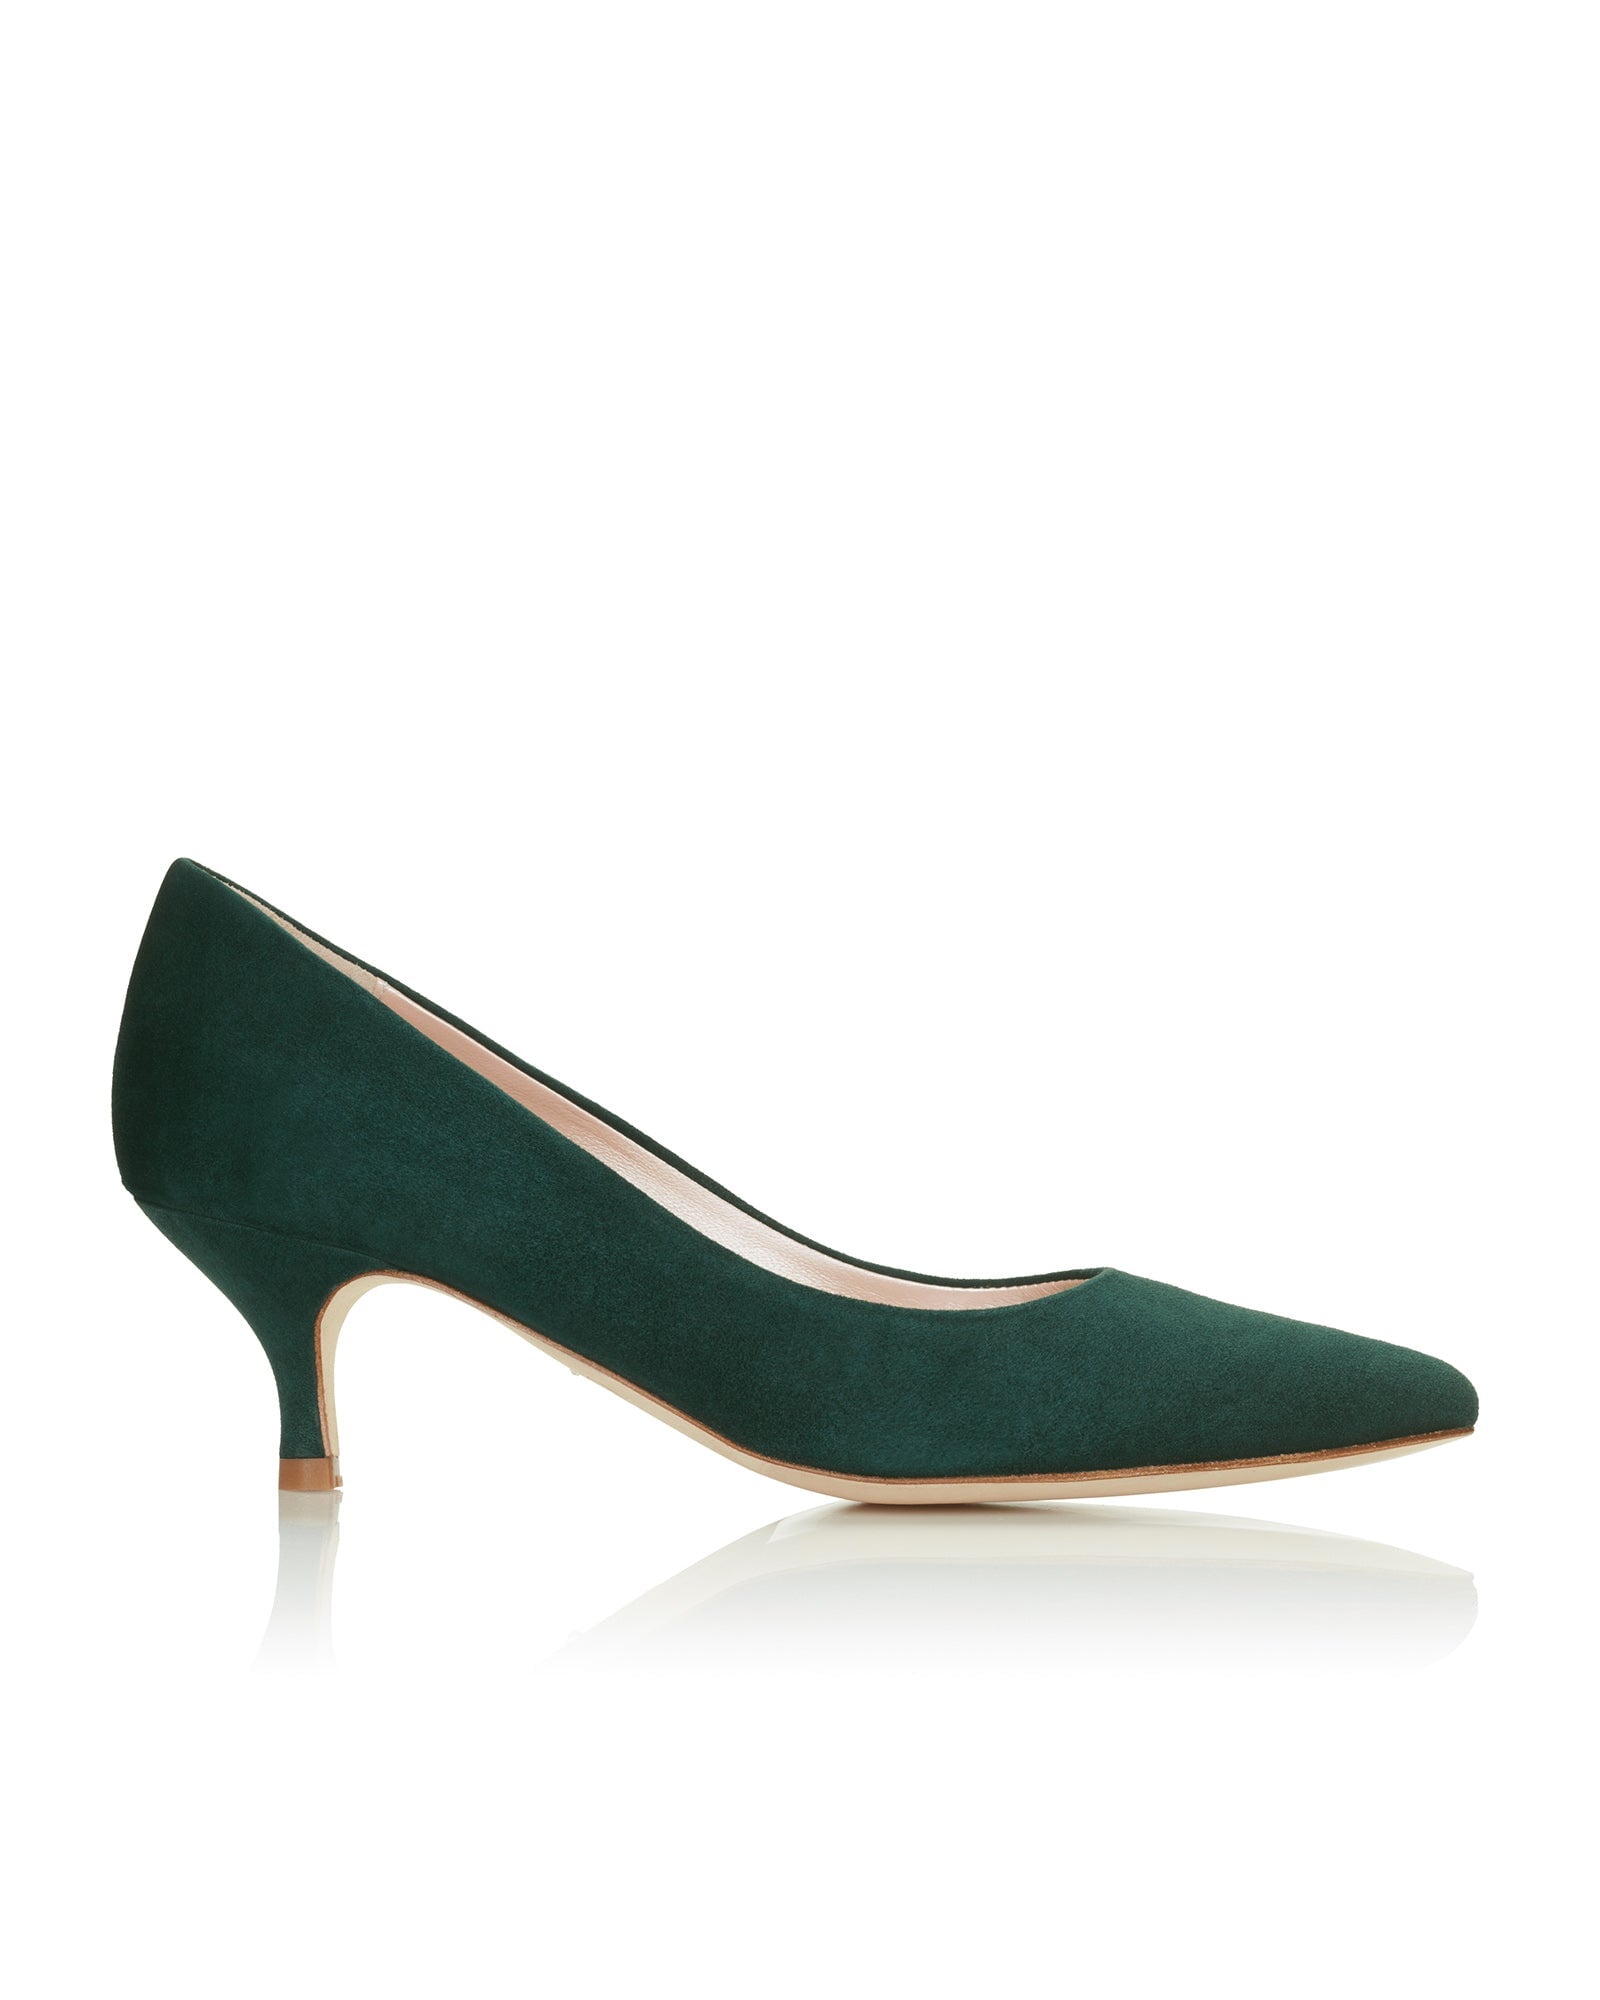 Olivia Kitten Greenery Fashion Shoe Rich Green Suede Court Shoe  image